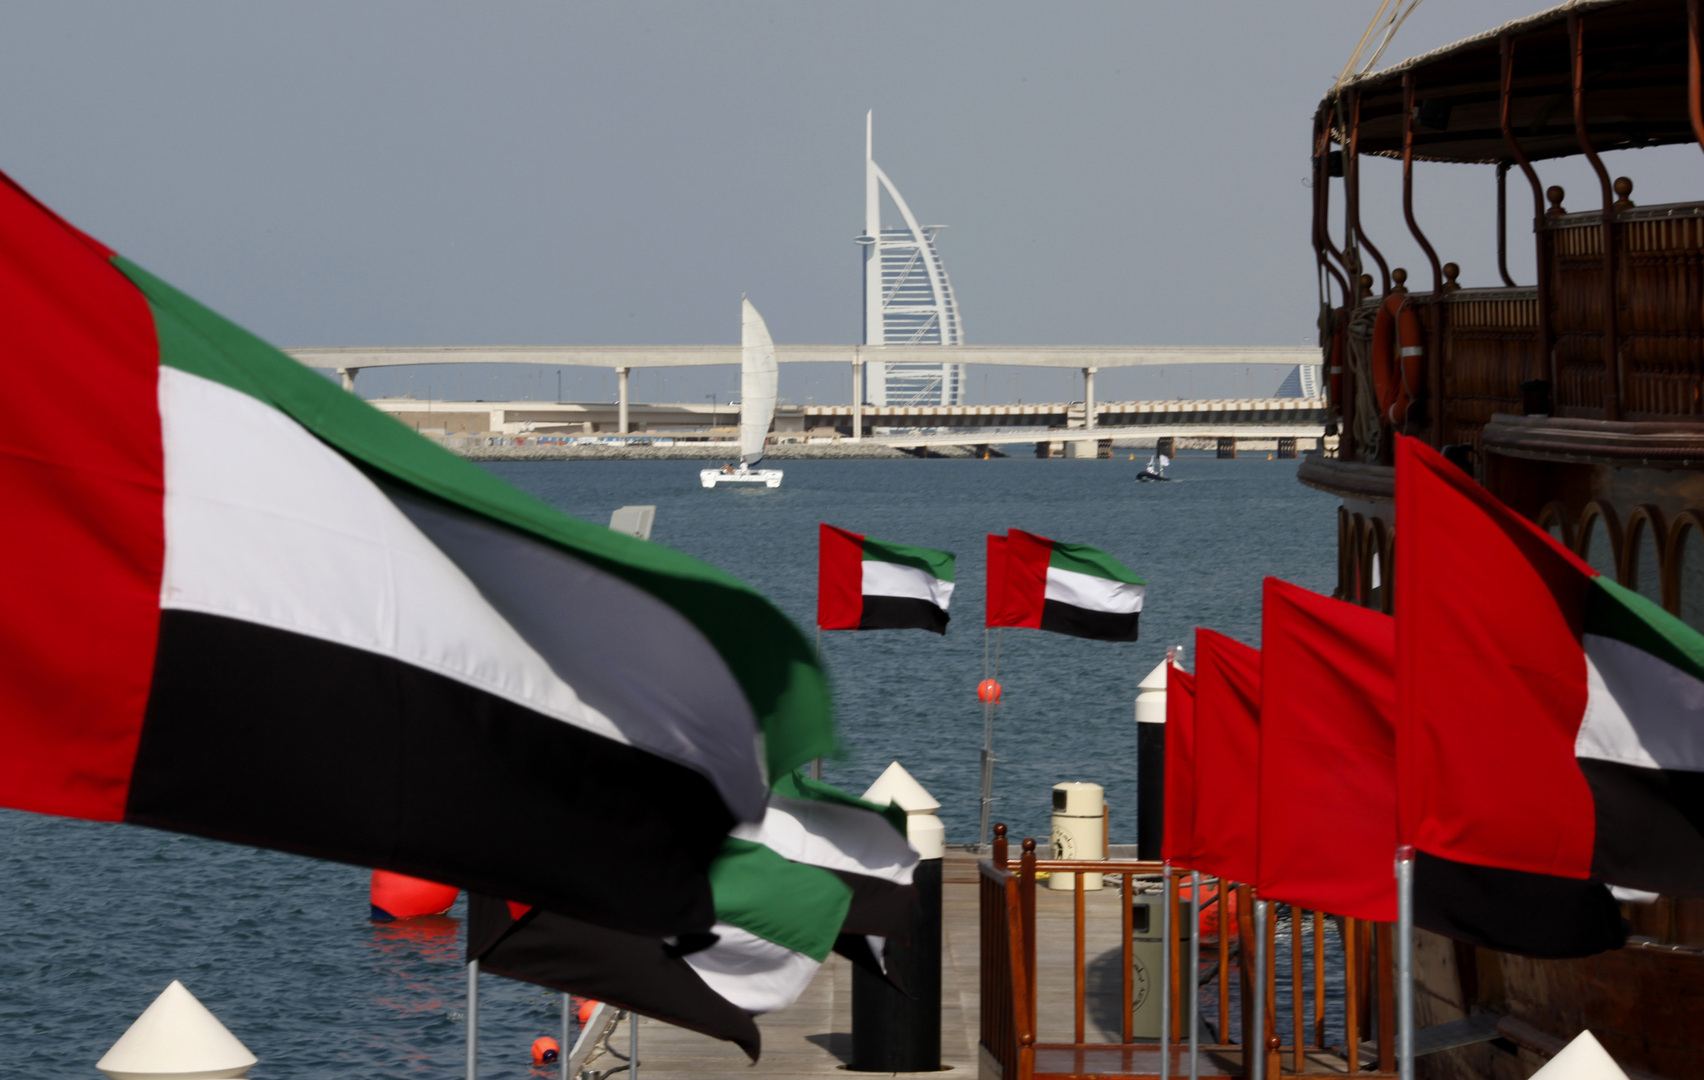 الإمارات.. إتاحة 5 أنواع من تأشيرات الإقامة الطويلة دون كفيل